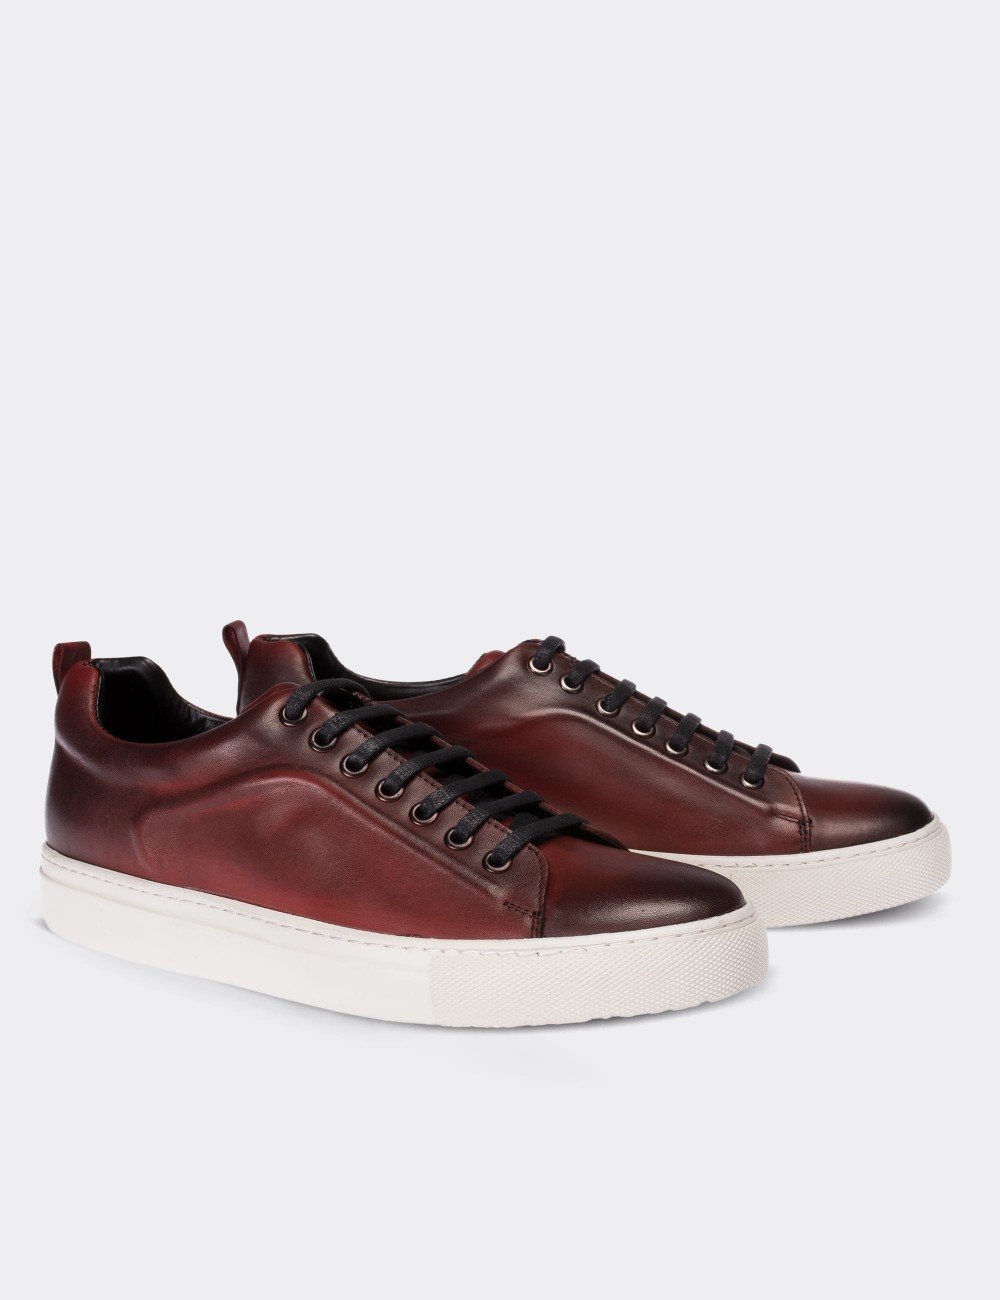 Burgundy Leather Sneakers - Deery